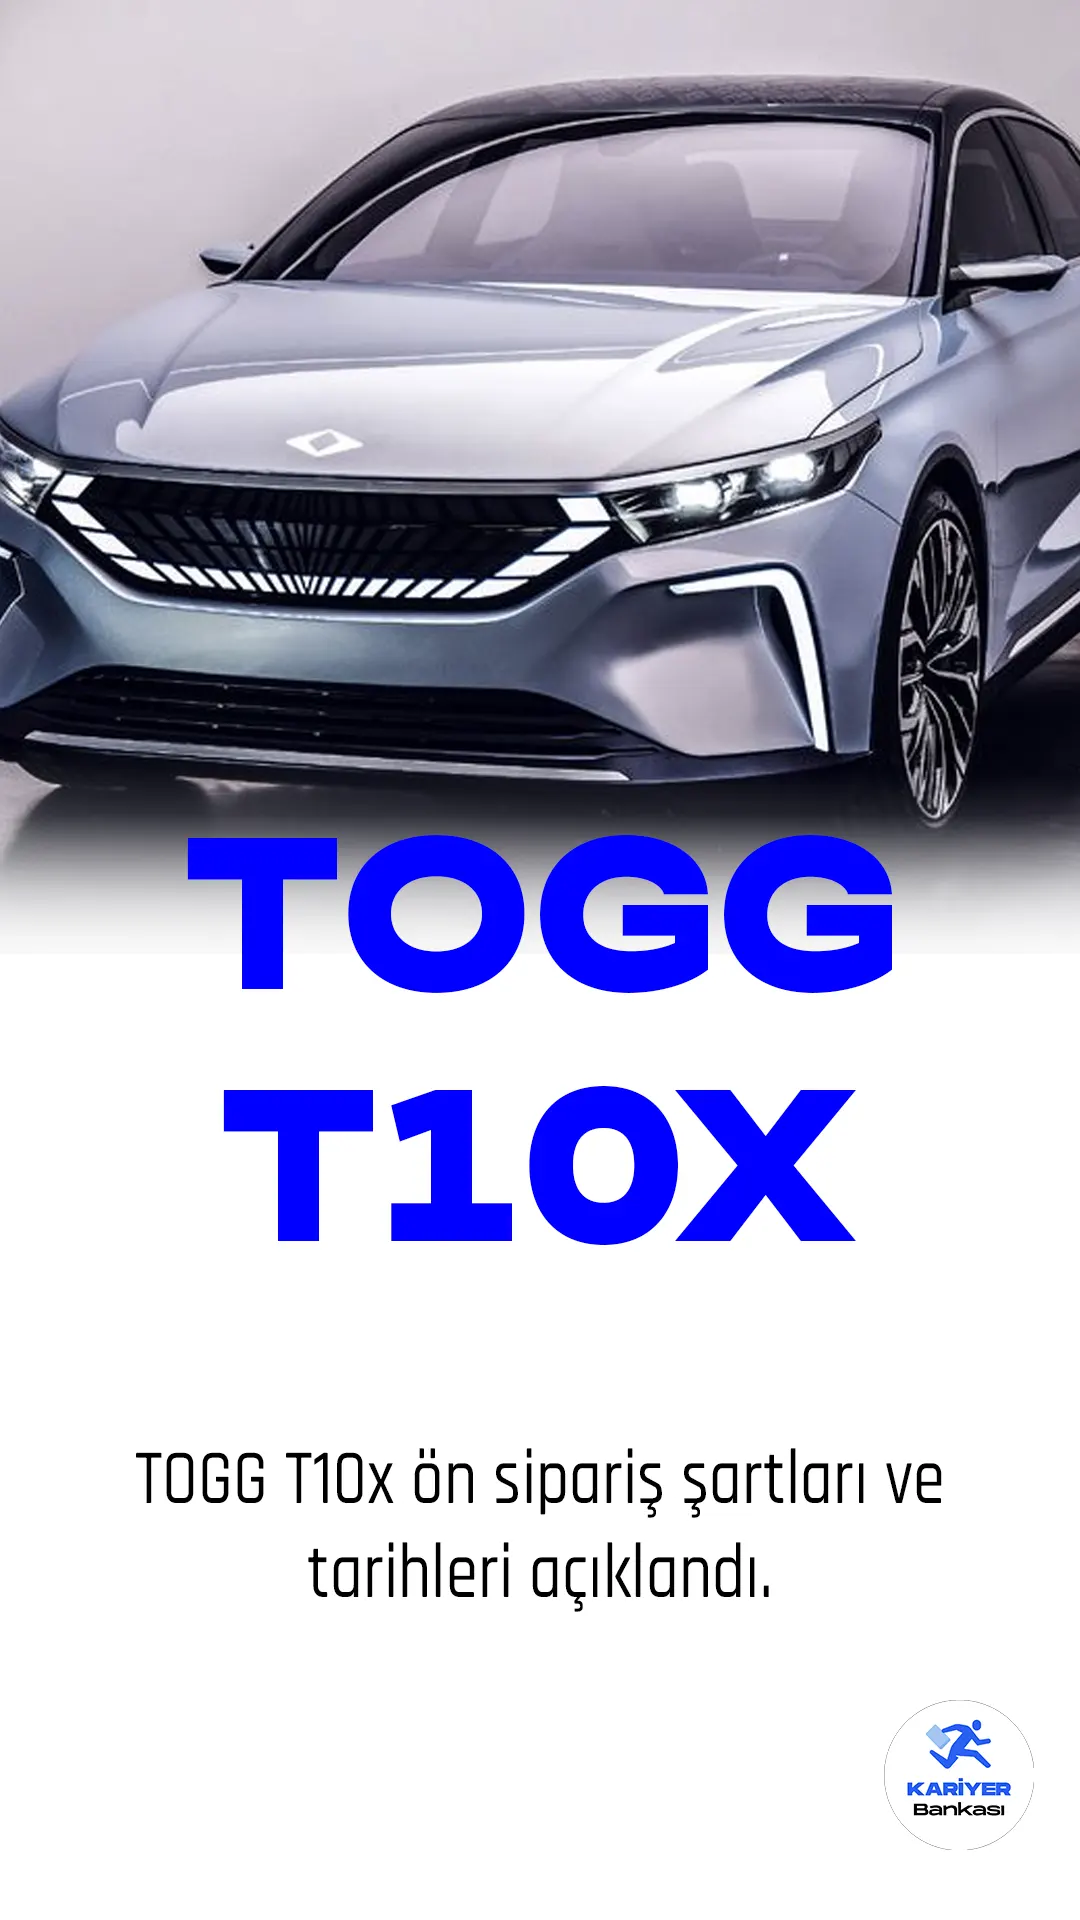 Türkiye'nin ilk doğuştan elektrikli akıllı cihazı Togg T10X için ön sipariş süreci başladı. 16-27 Mart tarihleri arasında, Togg websitesi veya App Store, Google Play ve App Gallery üzerinden kullanılabilen Trumore uygulamasından cihazın ön siparişi verilebilecek.